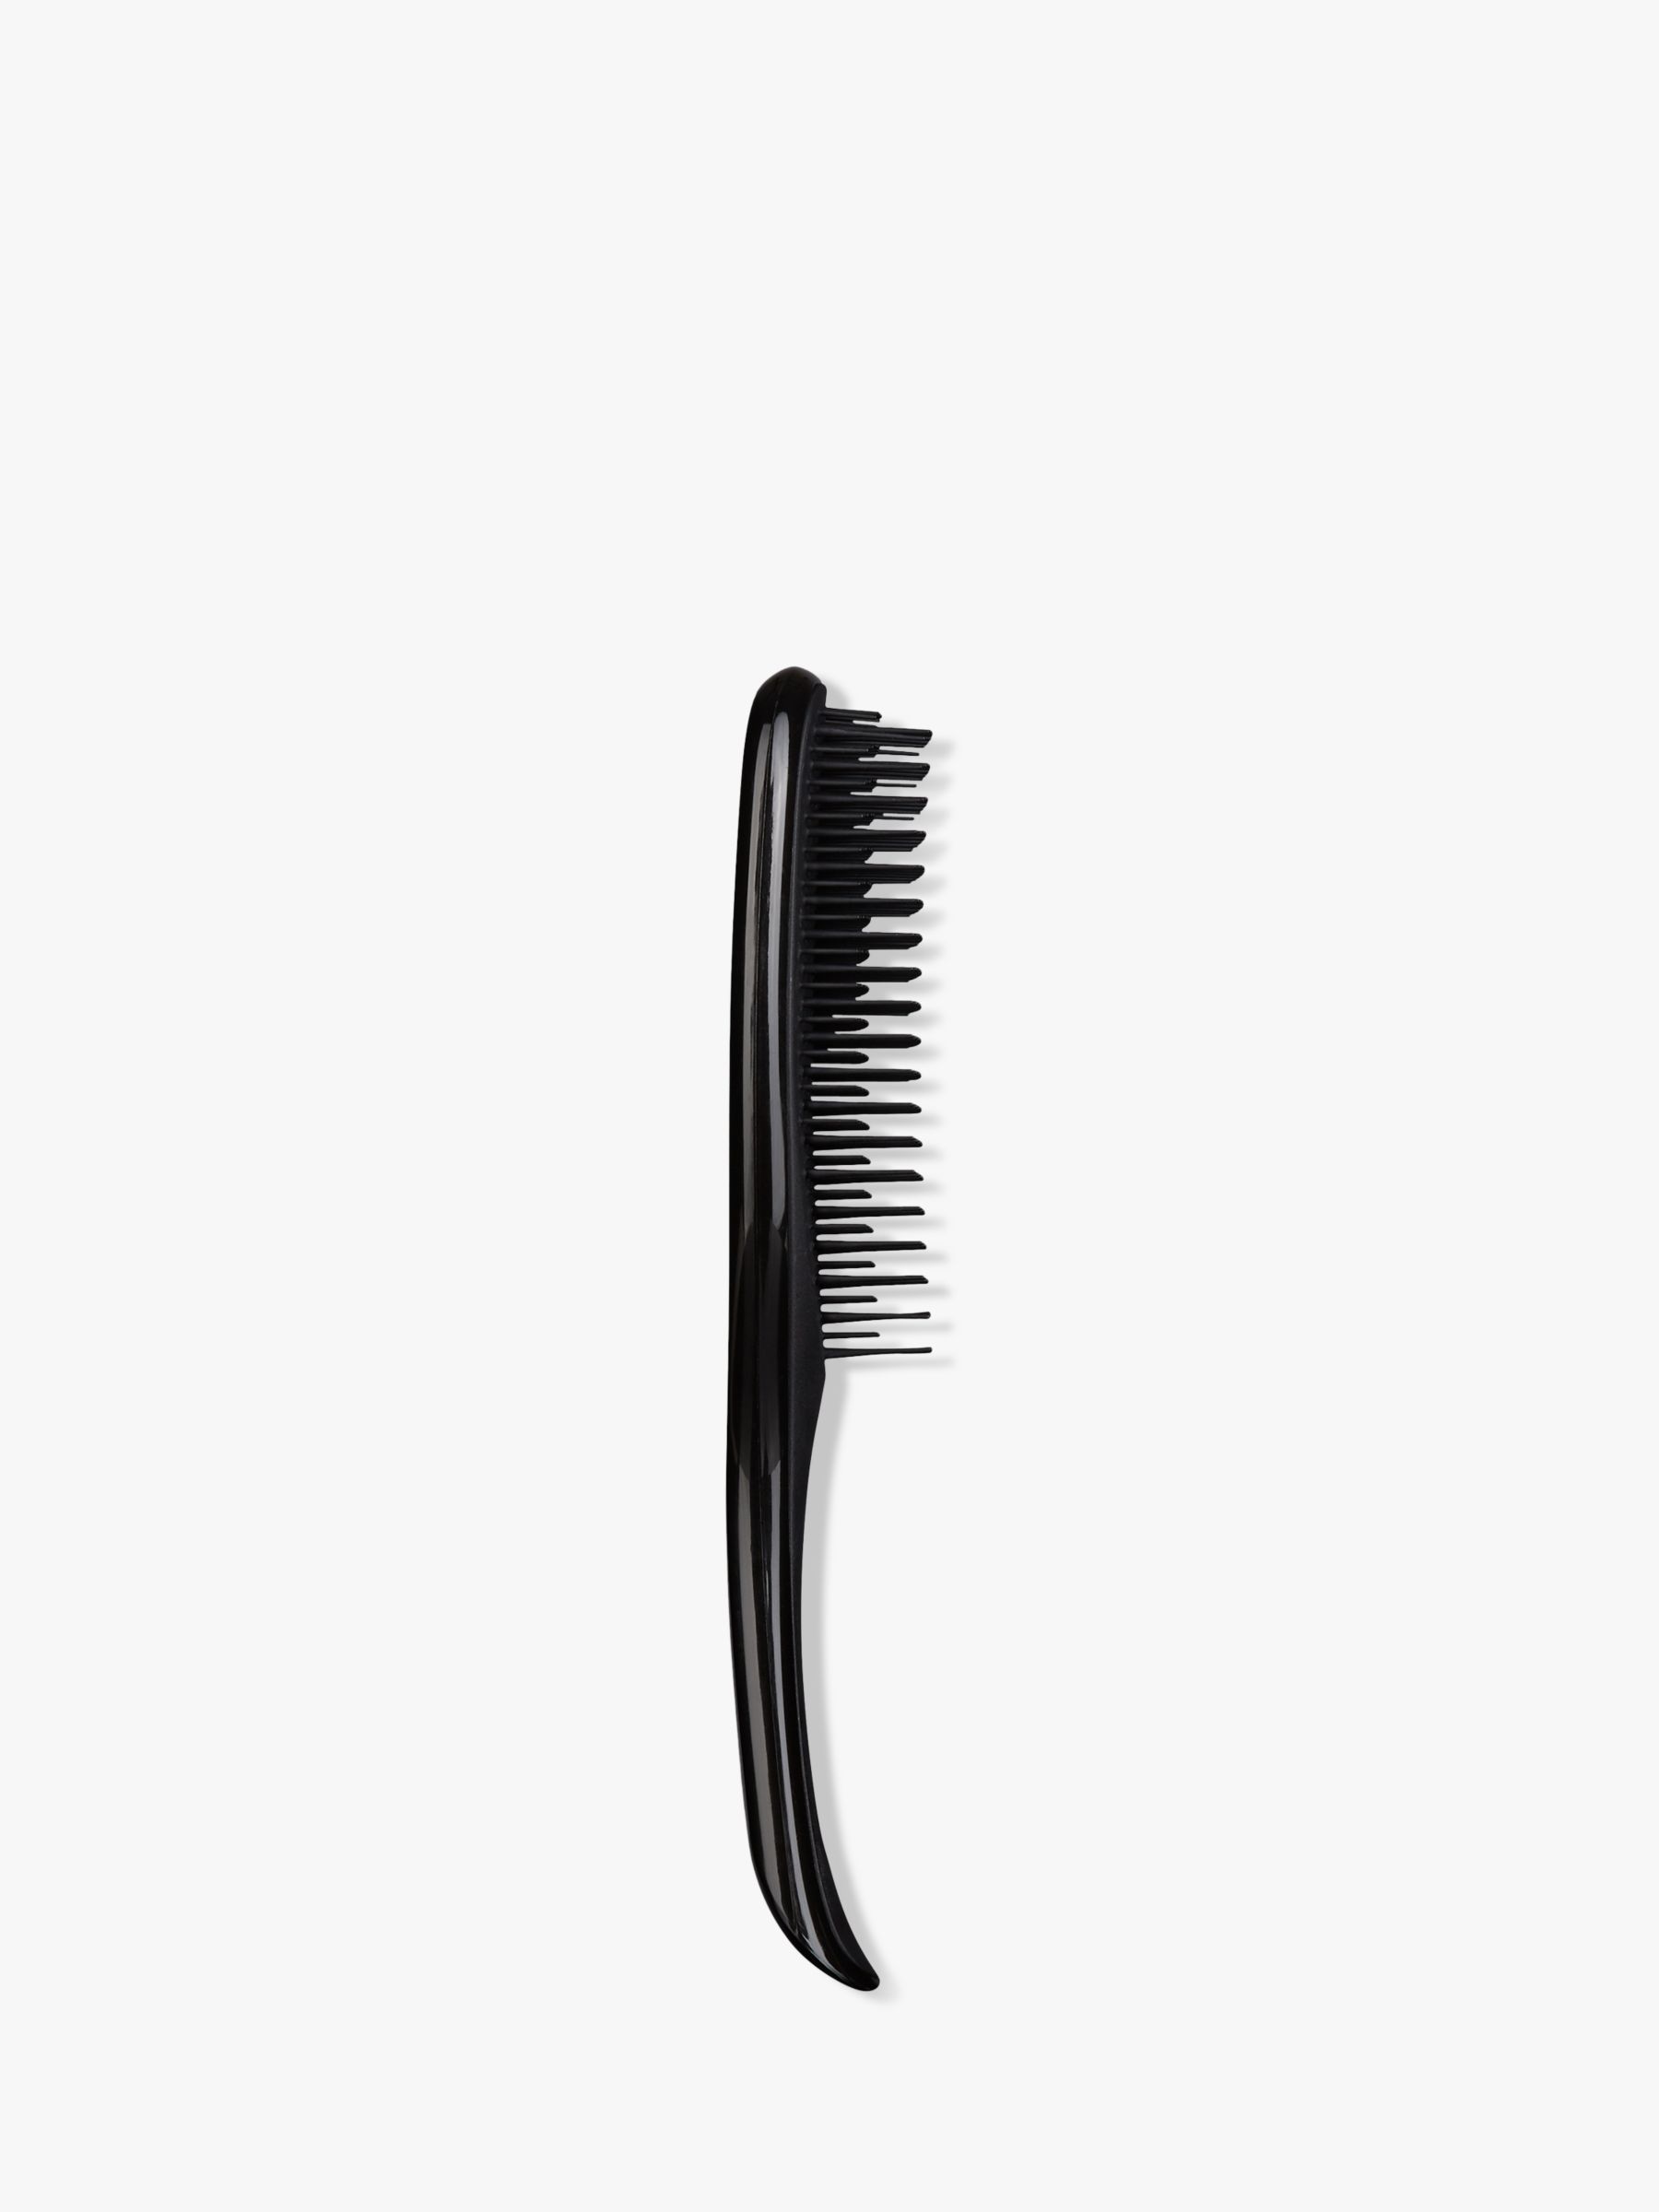 Tangle Teezer Wet Detangler Hair Brush, Liquorice Black